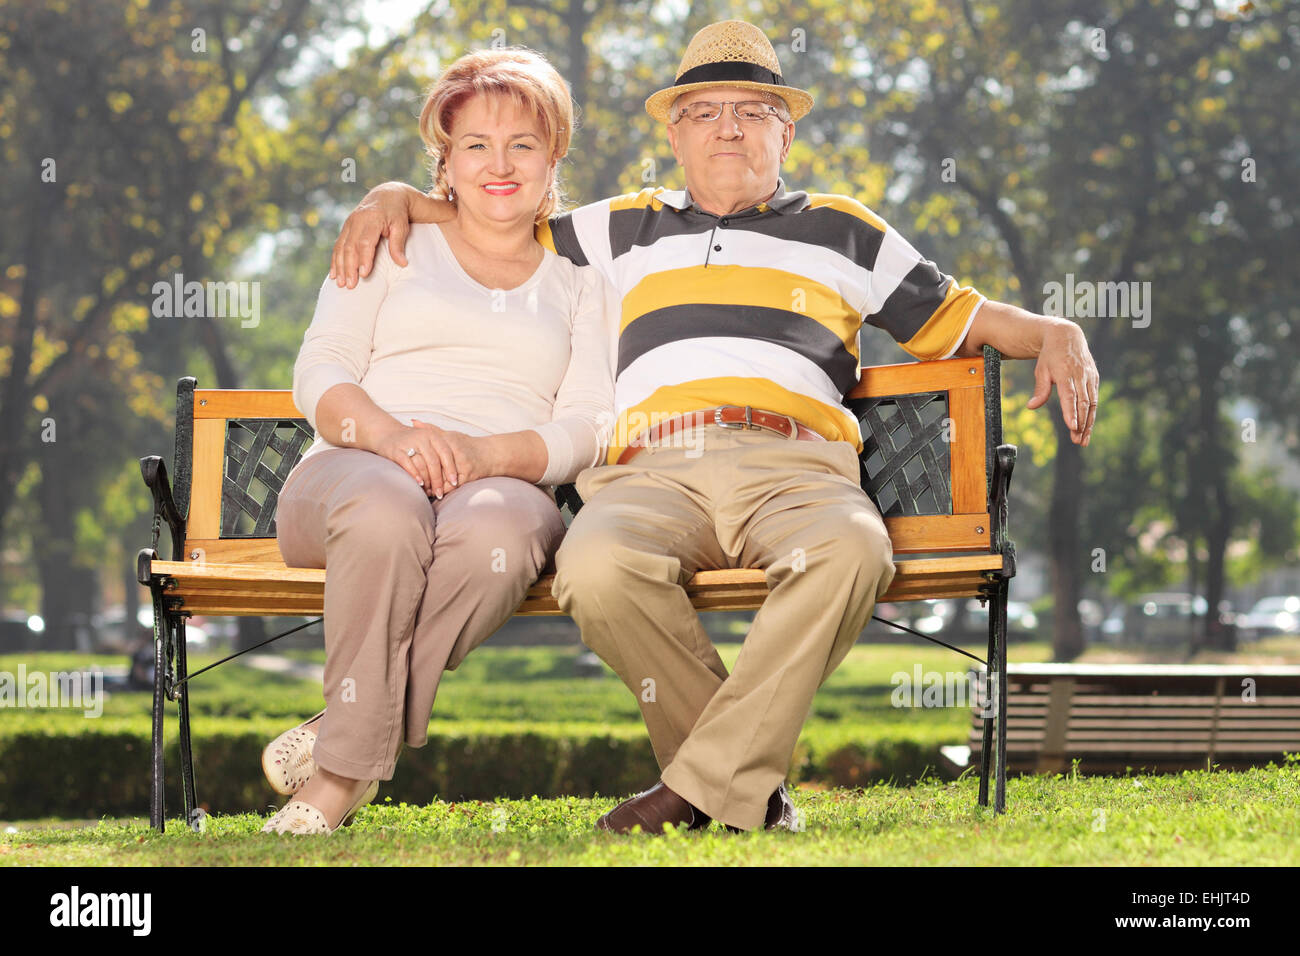 Älteres paar entspannte in einem Park am schönen sonnigen Tag Stockfoto